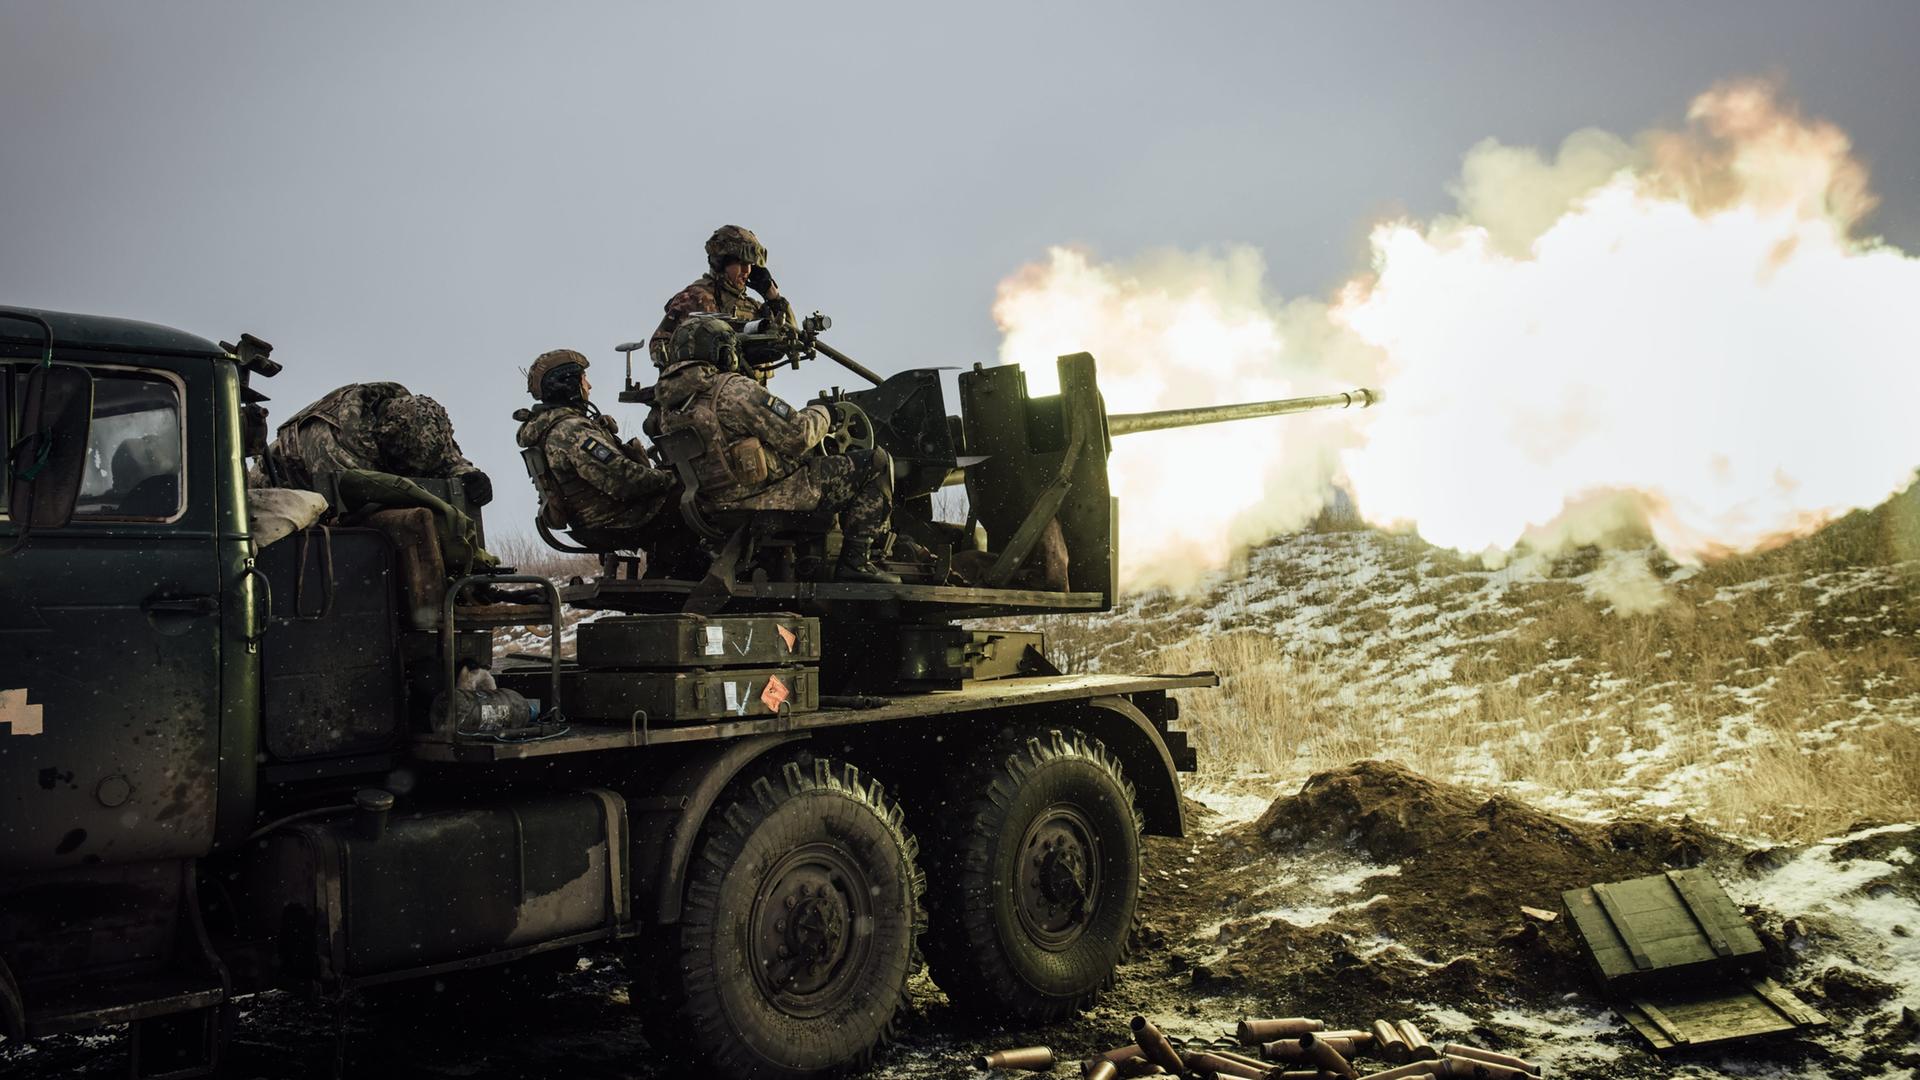 Ukrainische Soldaten sitzen auf einem Lastwagen mit Waffenvorrichtung. In der Ferne leuchtet Rauch.